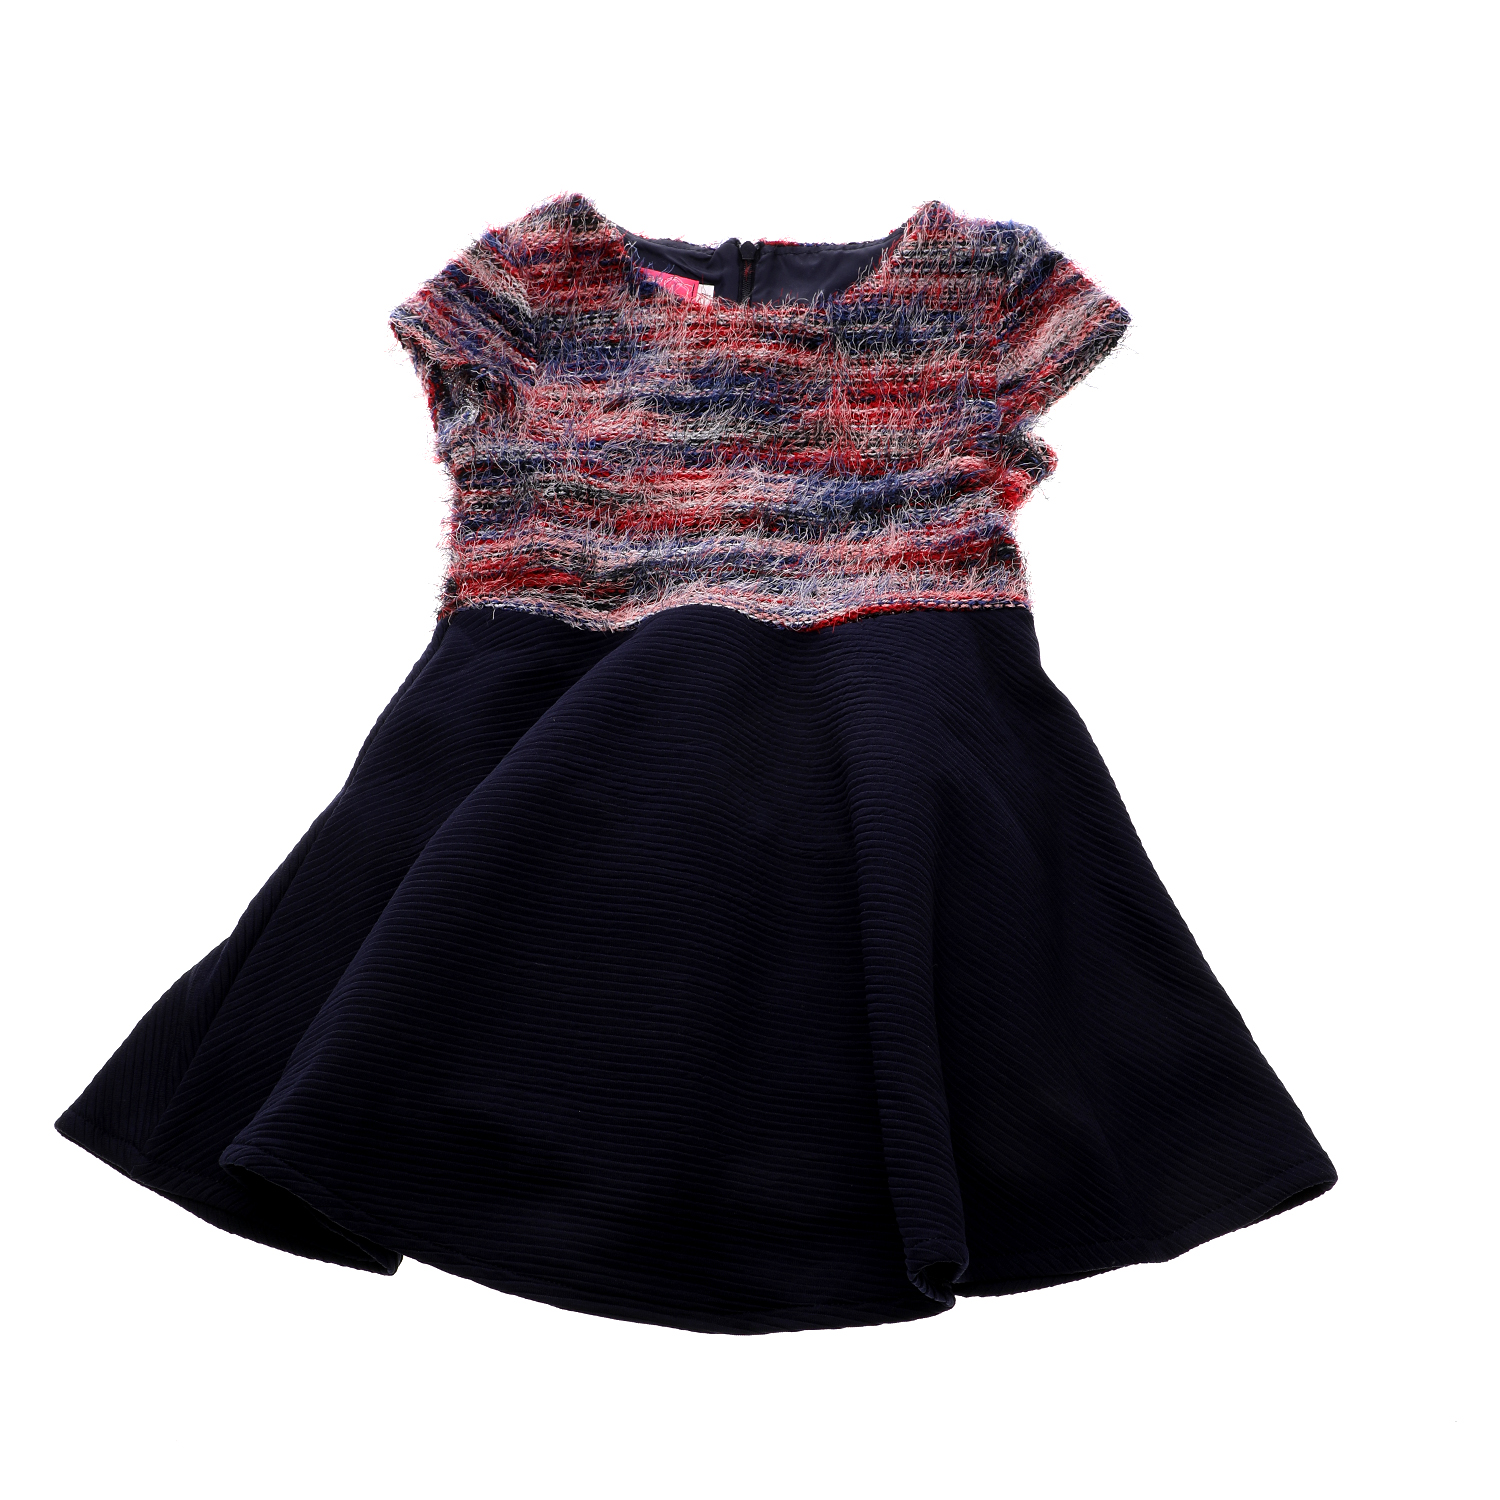 Παιδικά/Girls/Ρούχα/Φορέματα Κοντομάνικα-Αμάνικα SAM 0-13 - Παιδικό φόρεμα SAM 0-13 μπλε κόκκινο